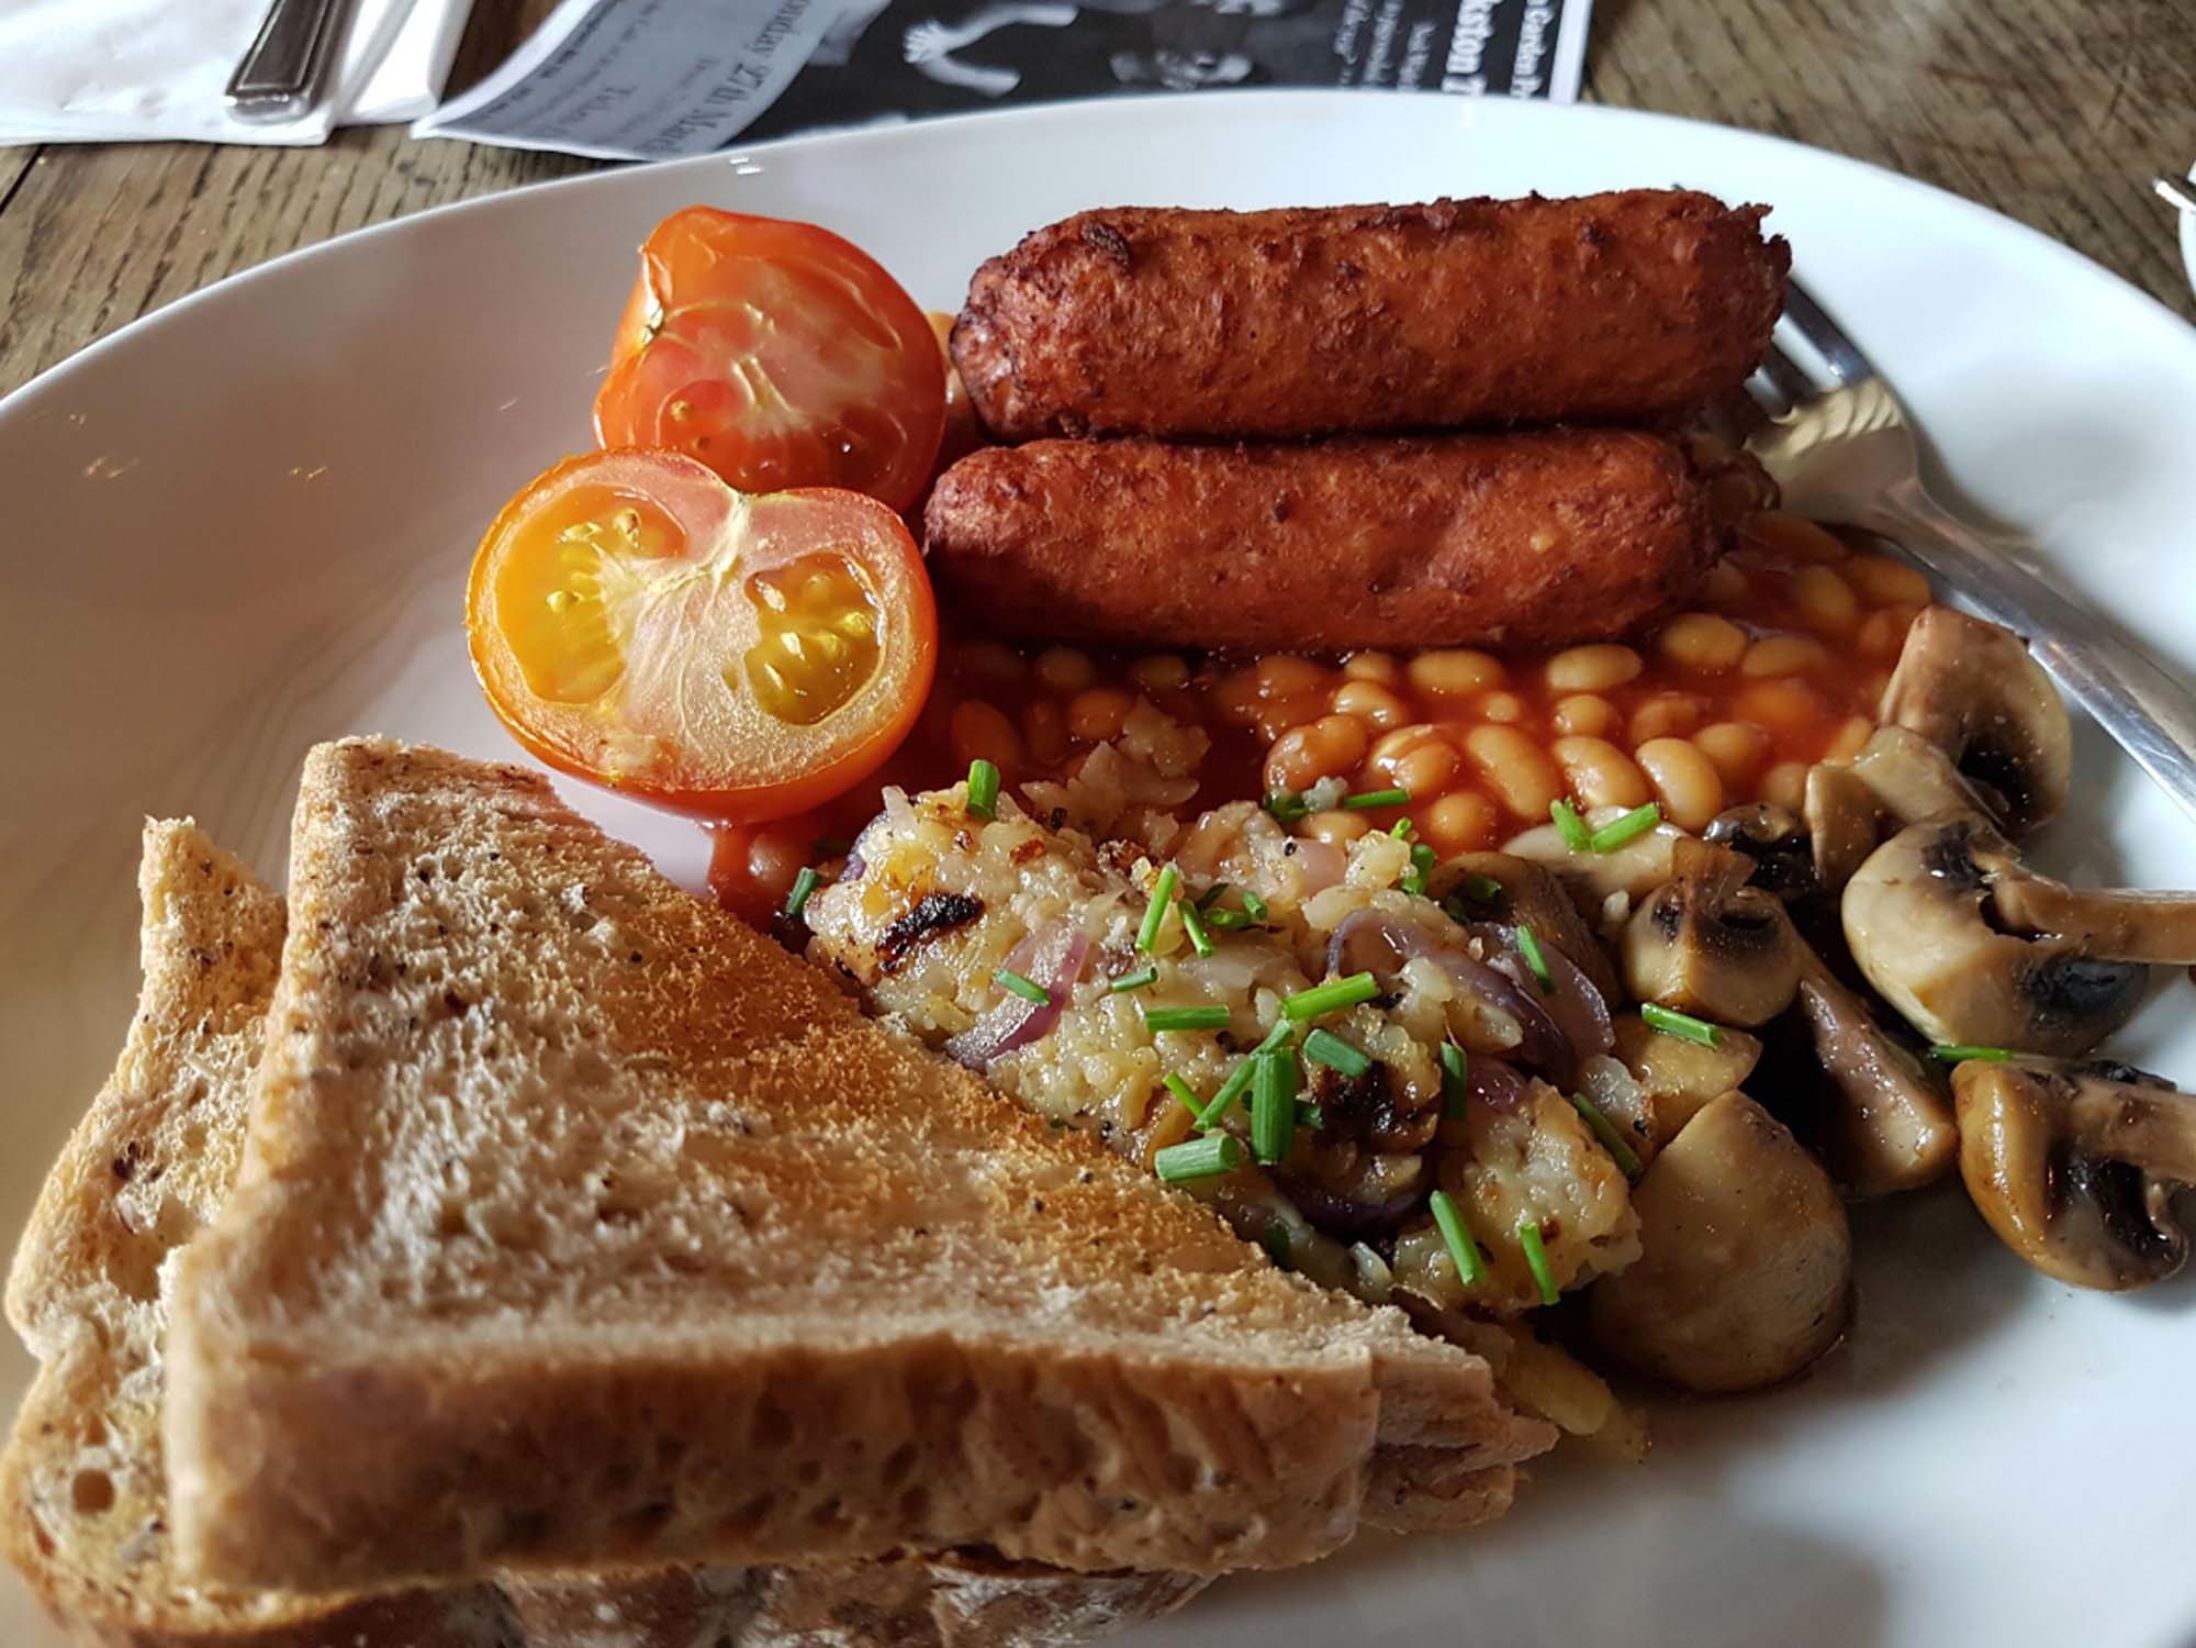 Best Breakfast in Birmingham - Kitchen Garden Cafe